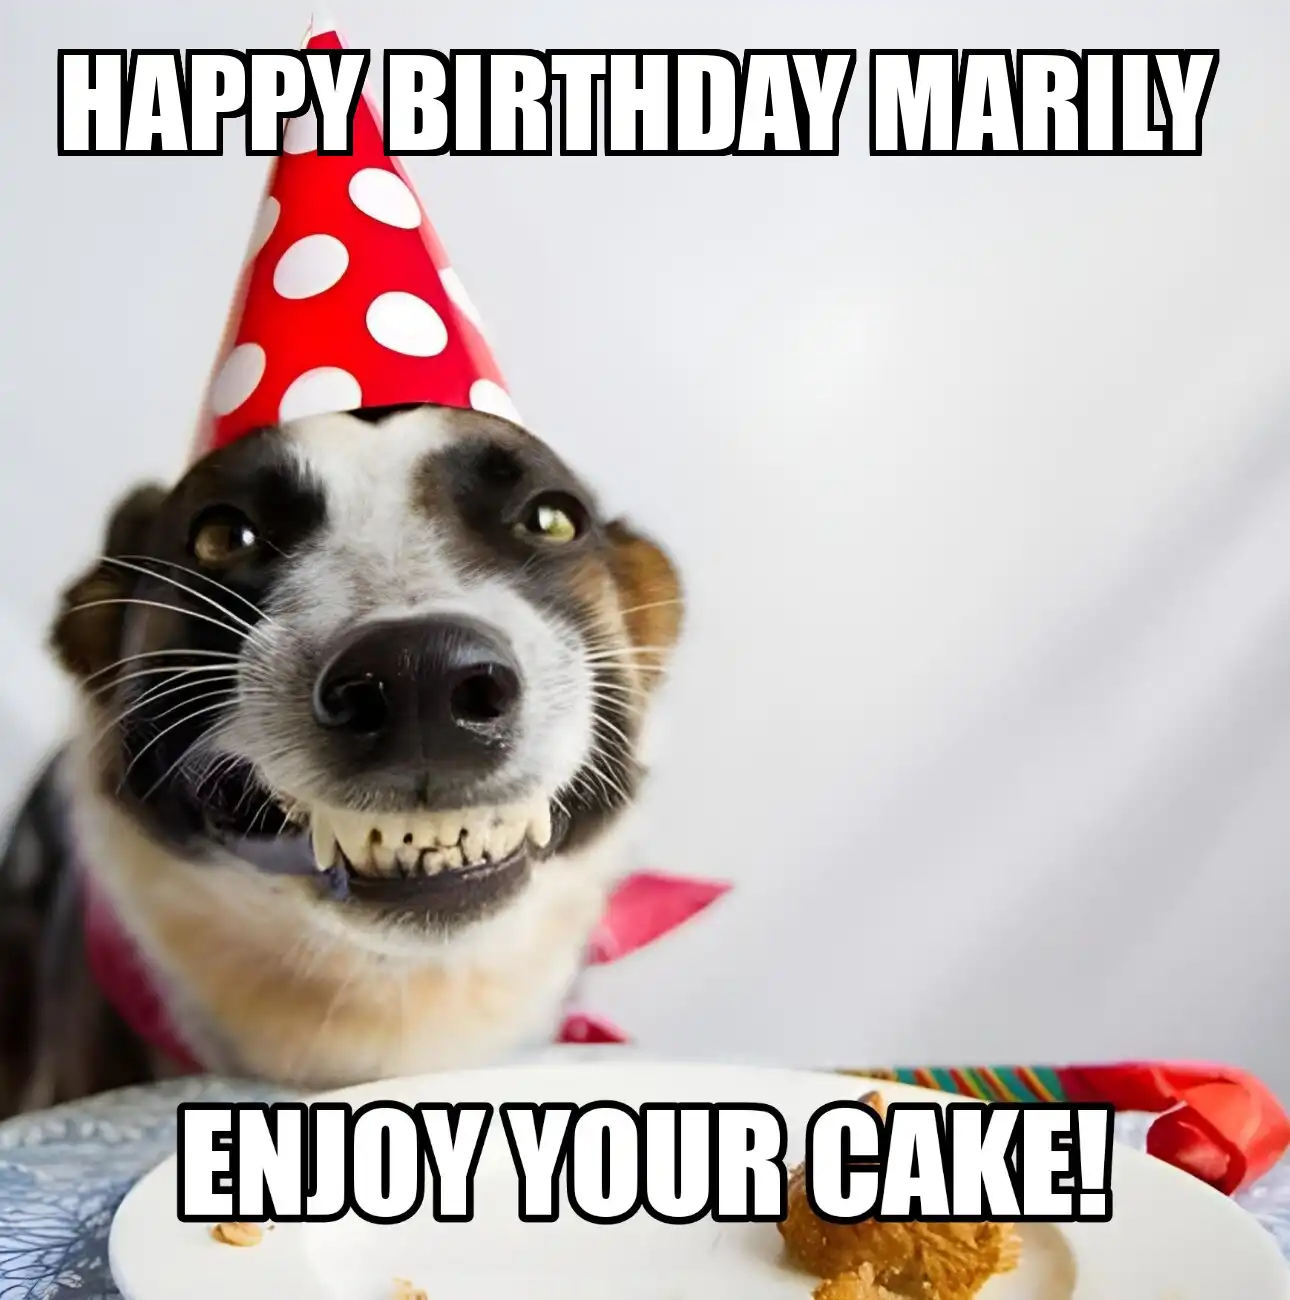 Happy Birthday Marily Enjoy Your Cake Dog Meme